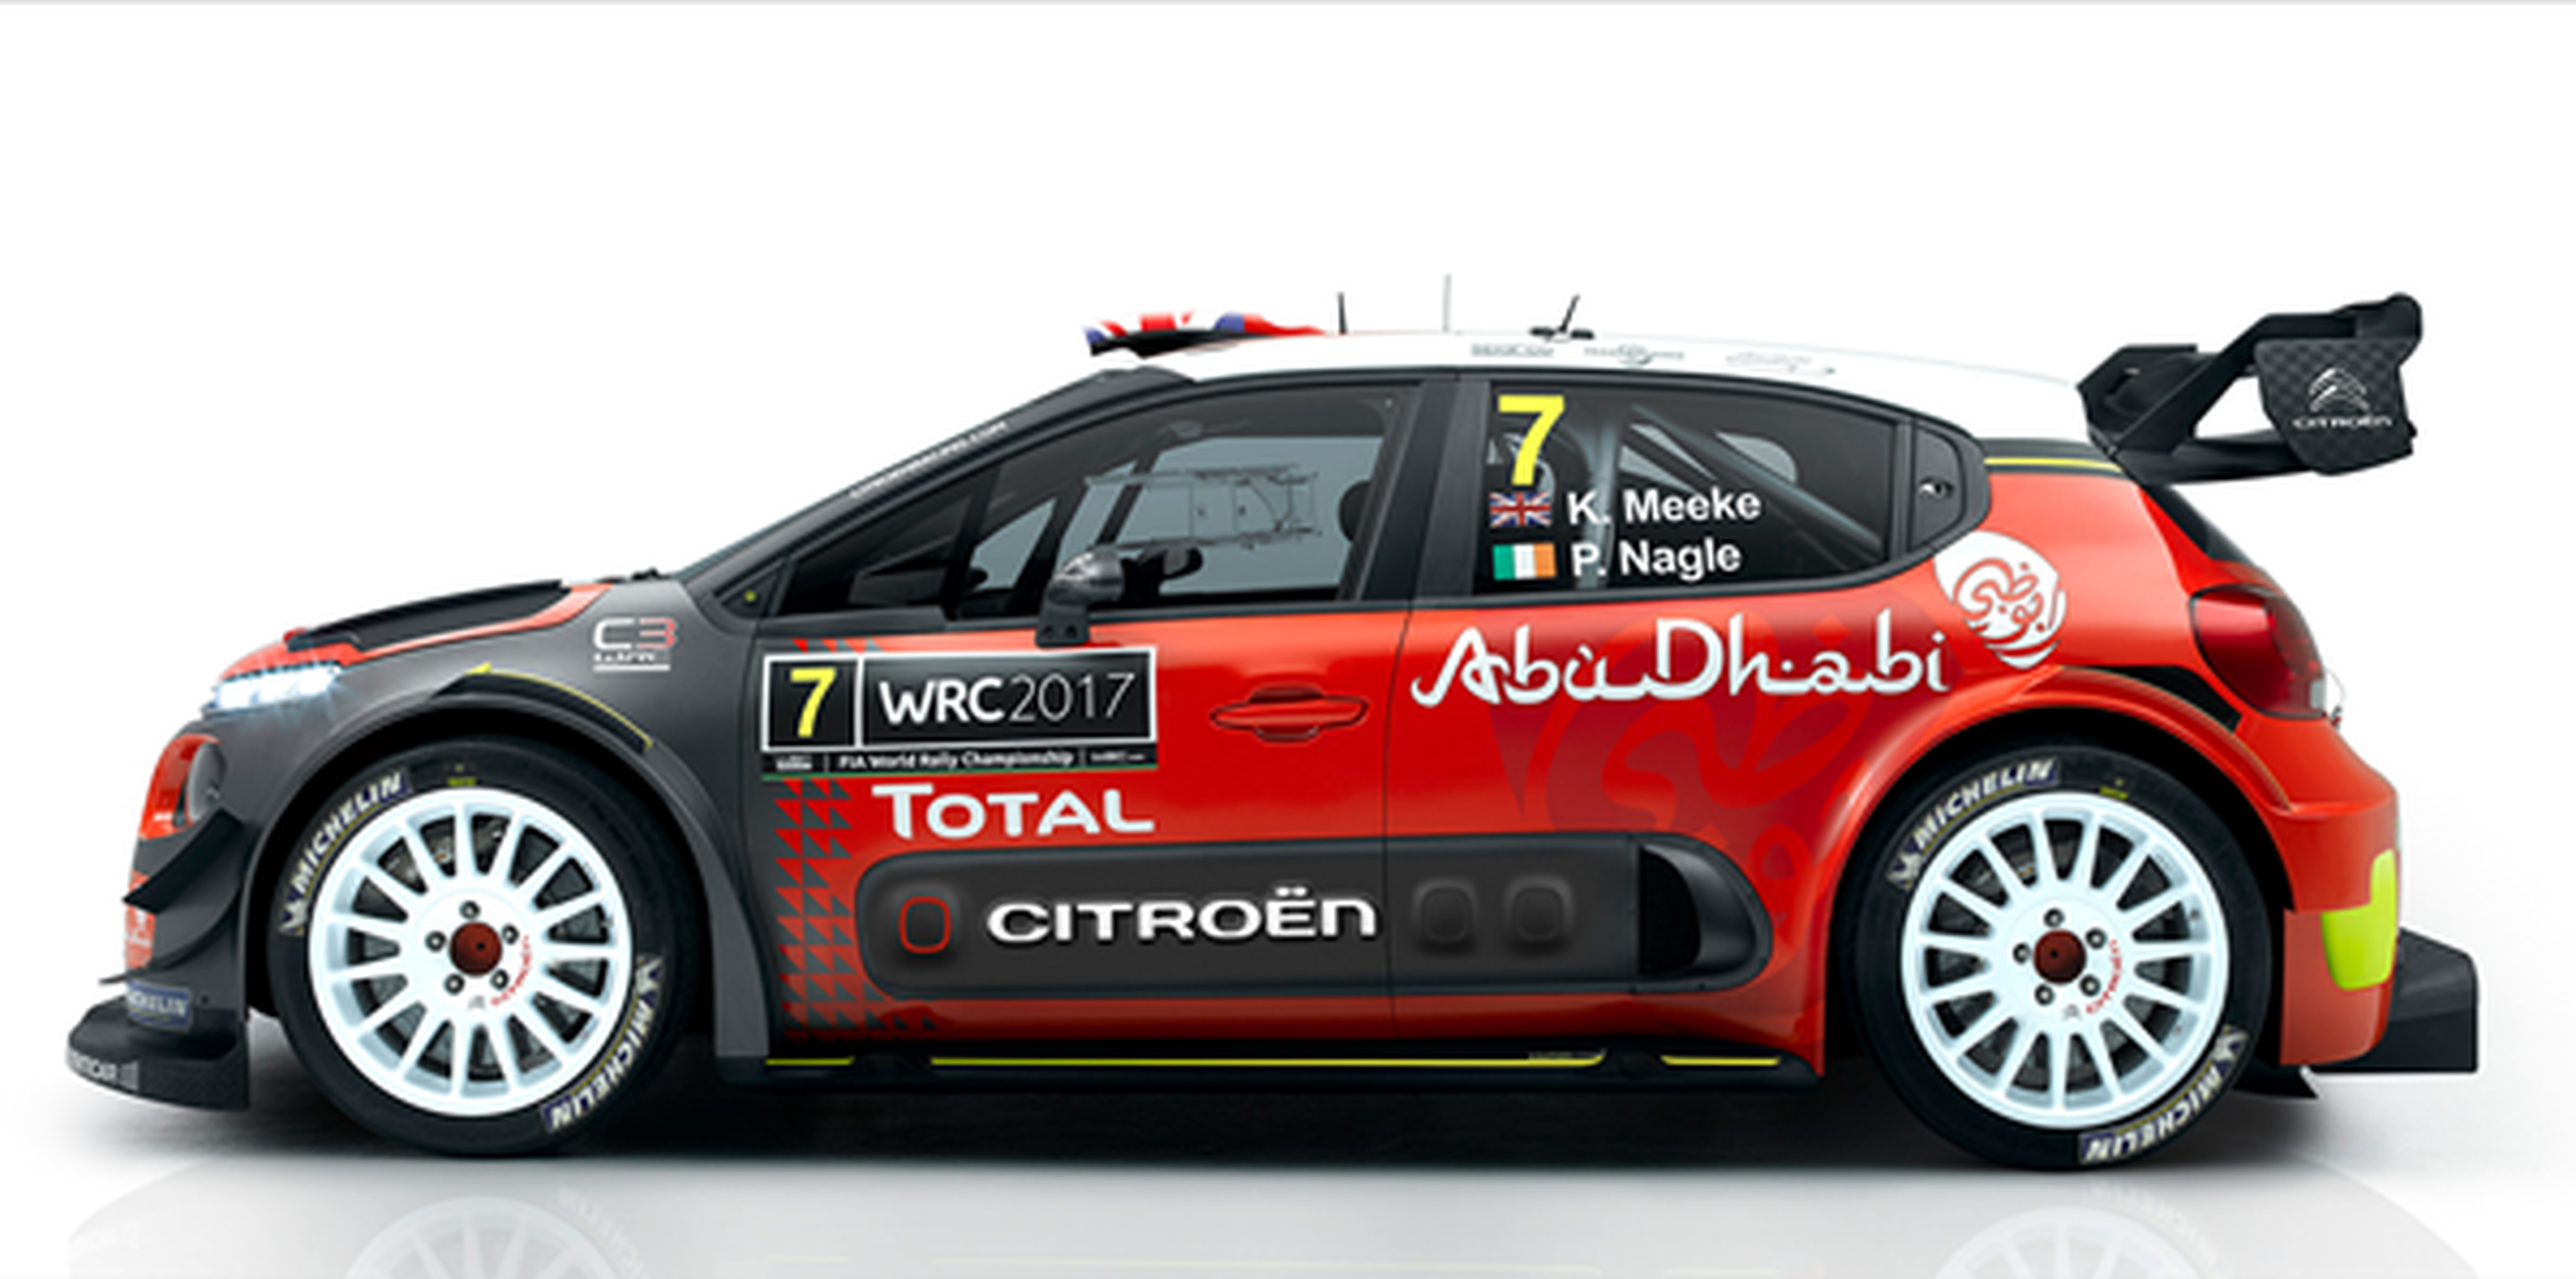 Nuevo Citroën C3 WRC 2017: la victoria como objetivo